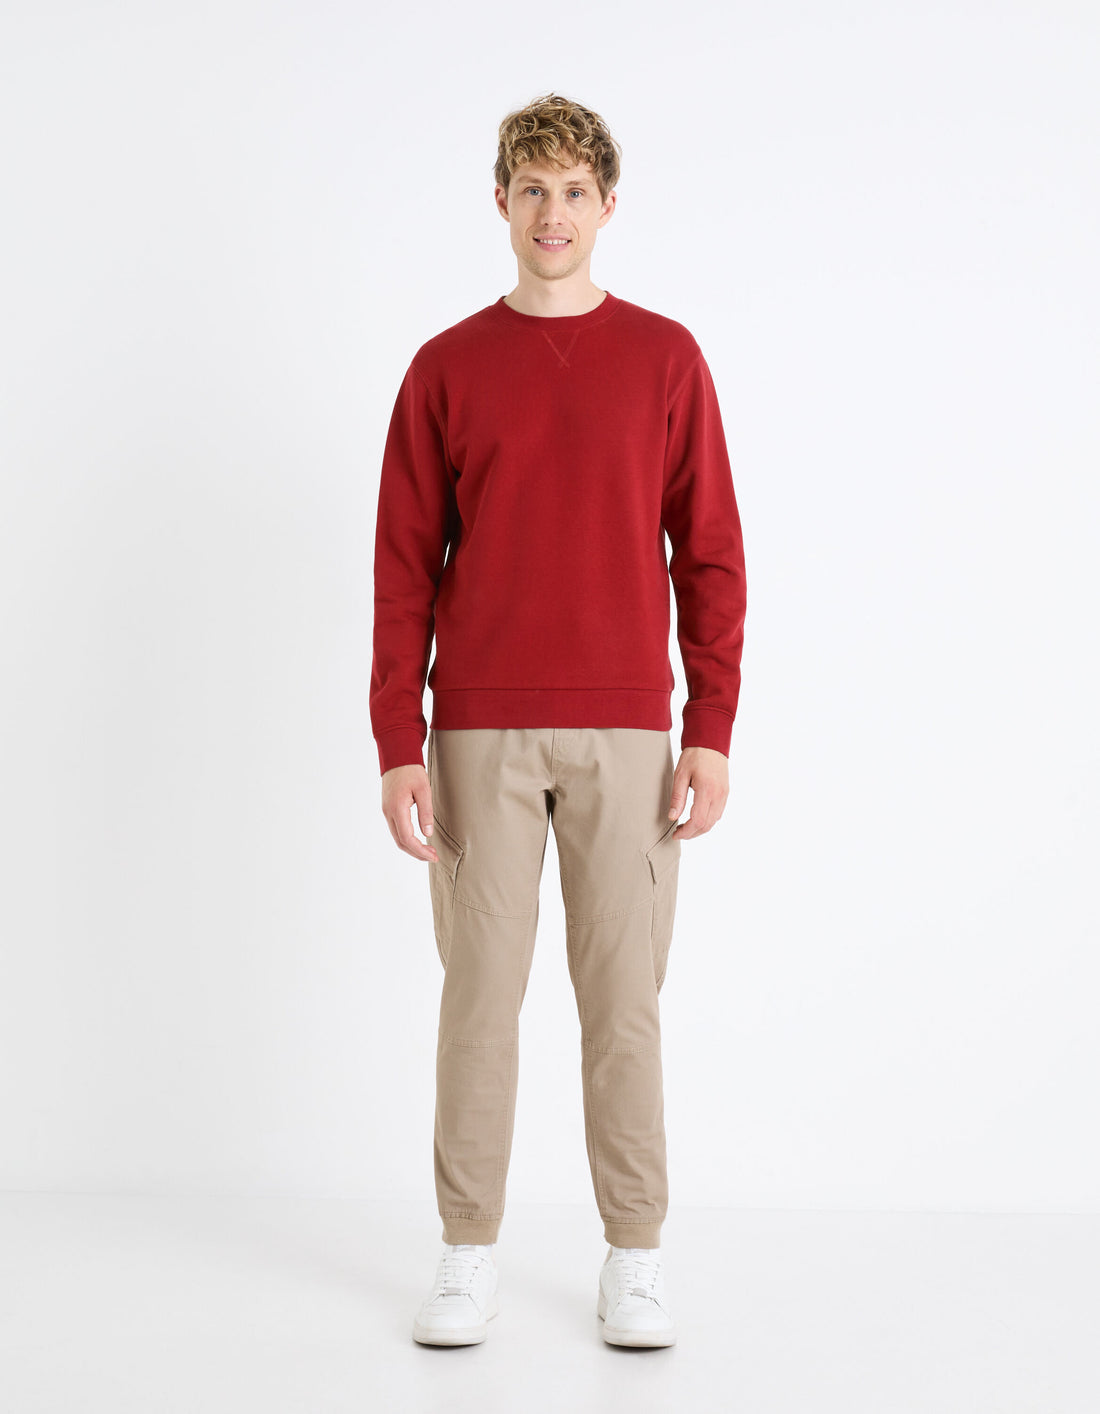 Round Neck Sweatshirt 100% Cotton_FESEVEN_BURGUNDY_02